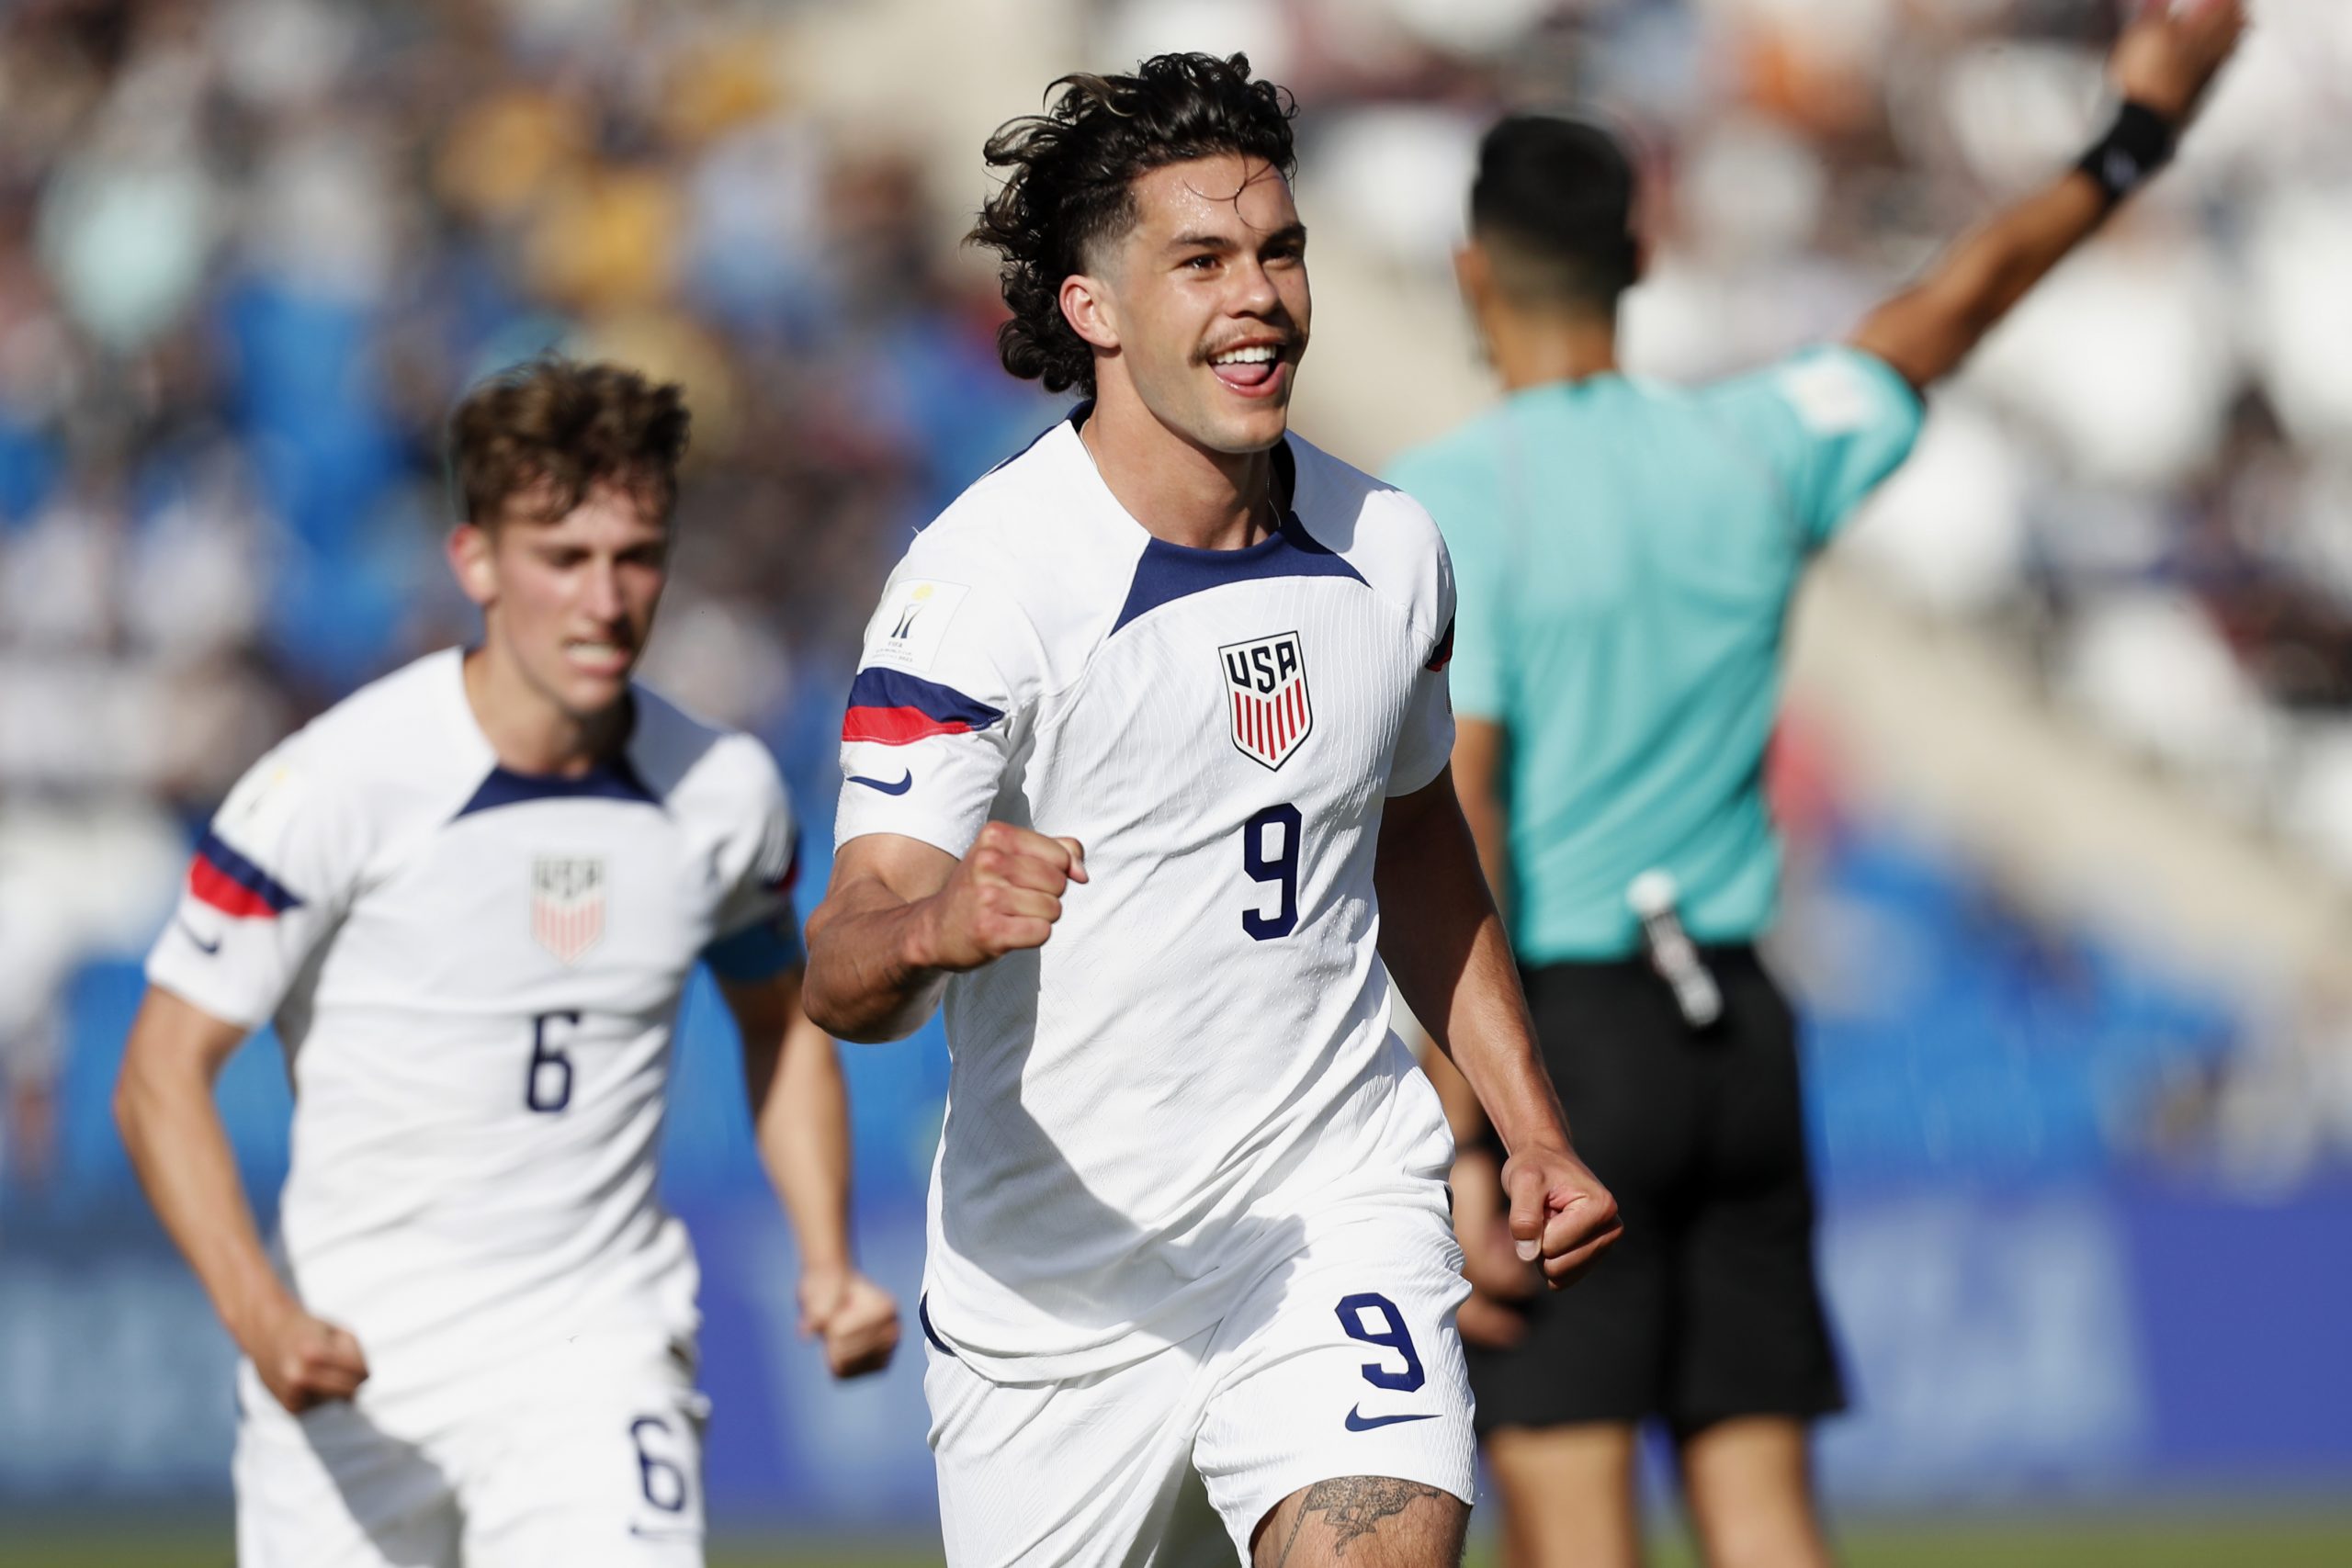 Uruguay vs Estados Unidos, por los cuartos de final de la Copa